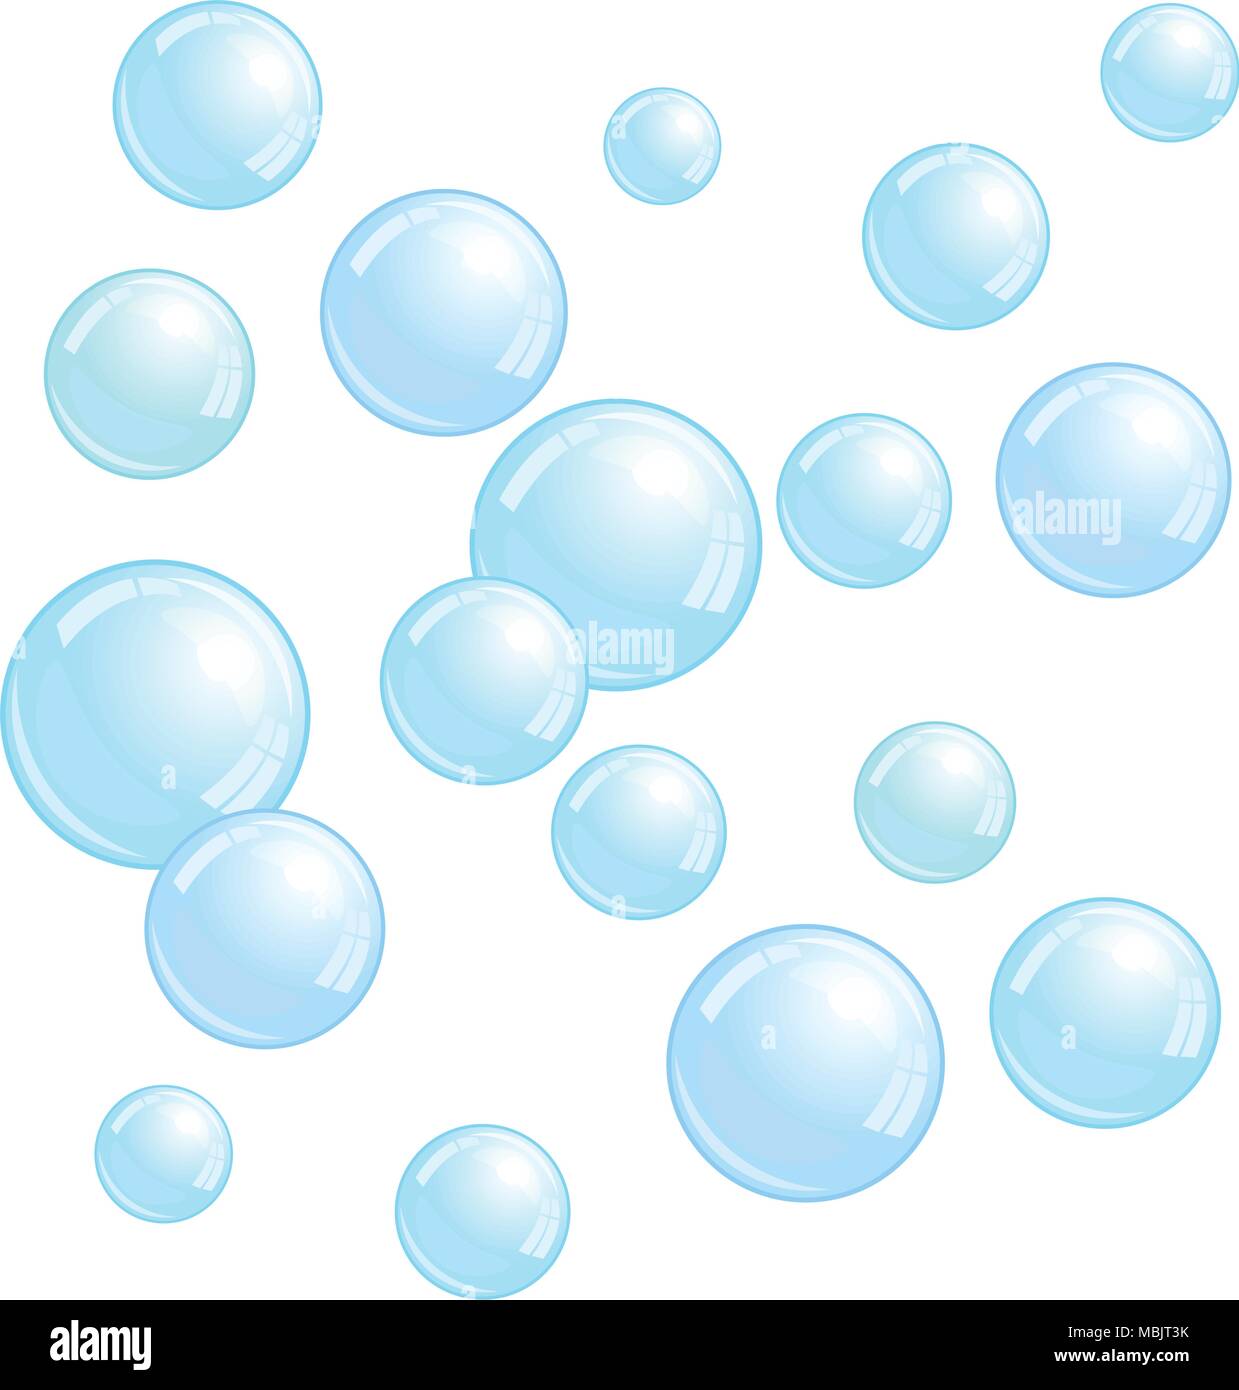 Seifenblasen, realistisches Wasser perlen, blaue Blobs, Vektor Schaum Kugel Abbildung Stock Vektor